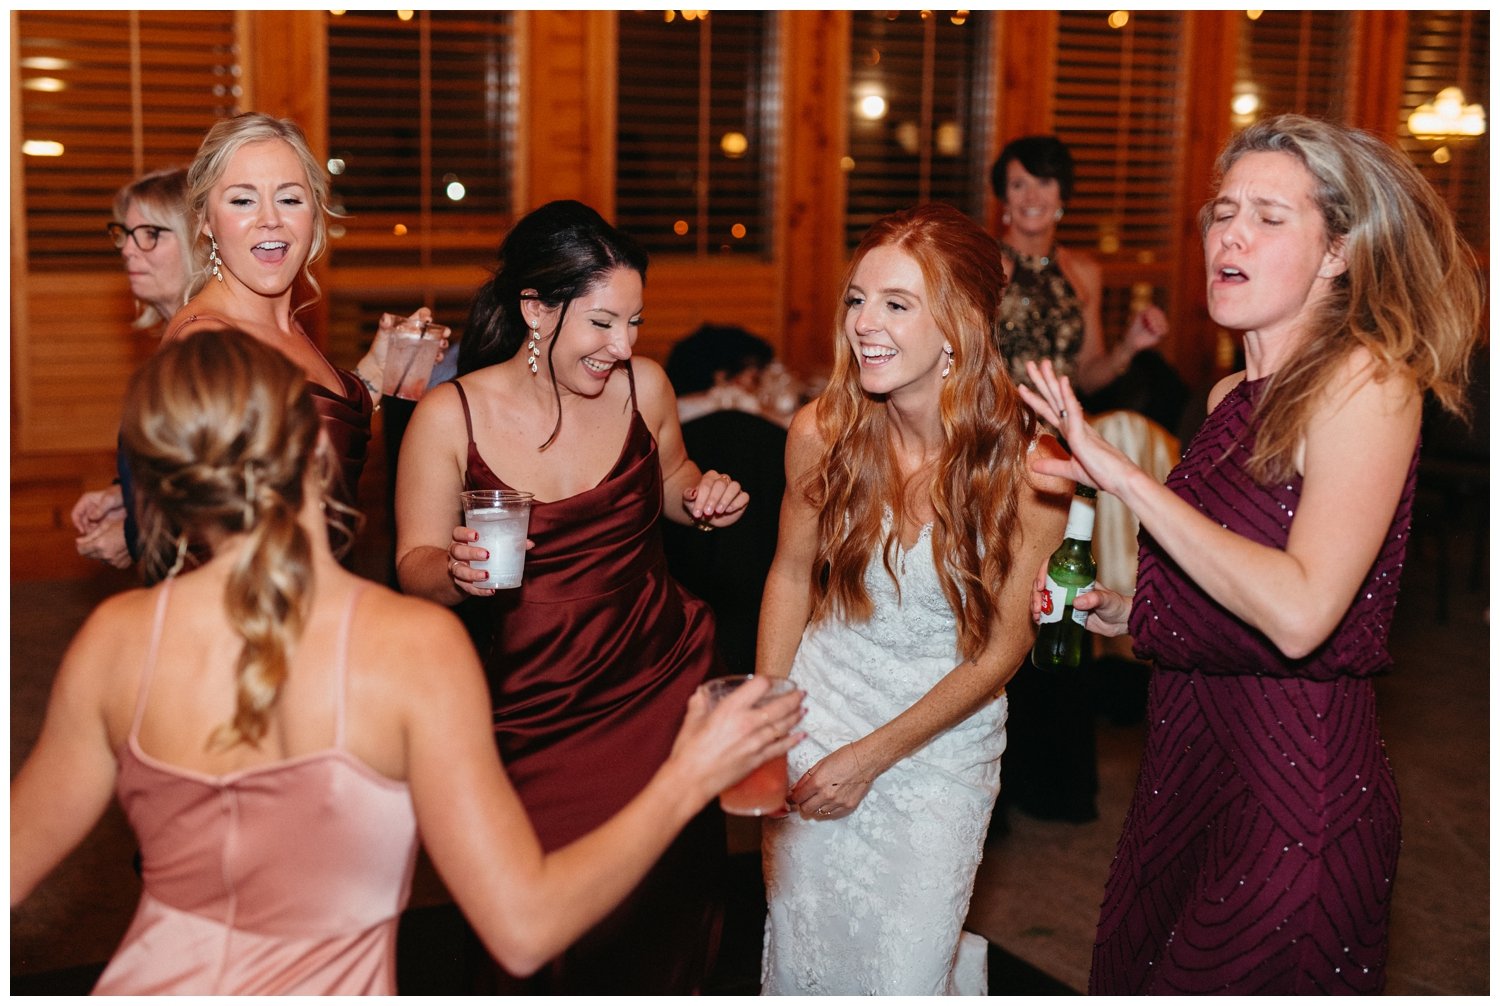 The bride dances with friends